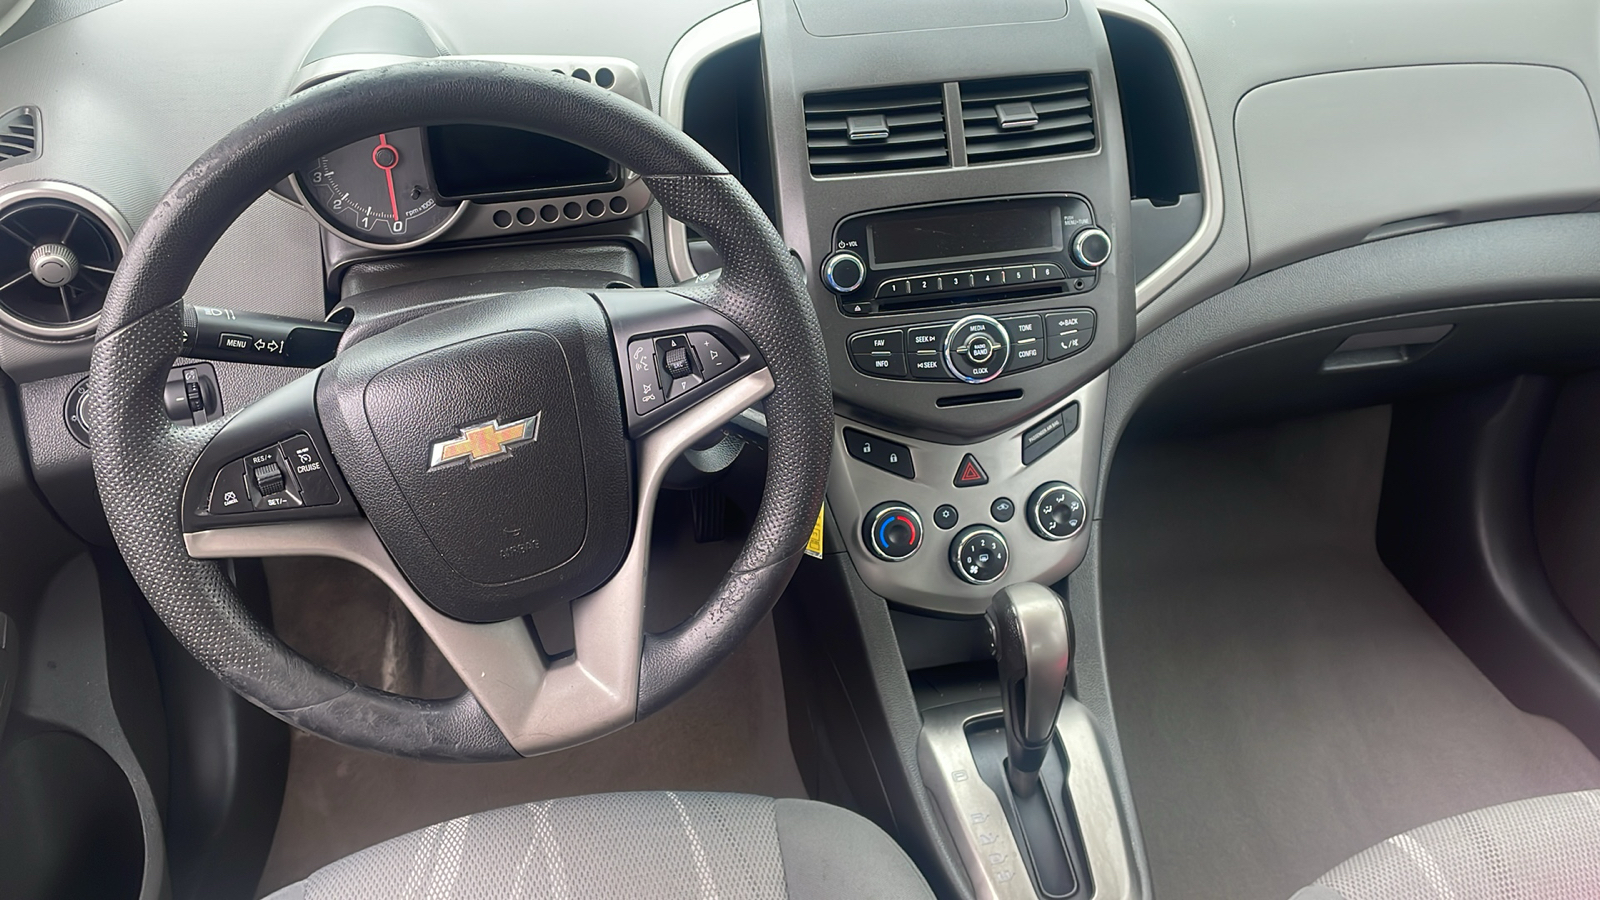 2014 Chevrolet Sonic LT 13